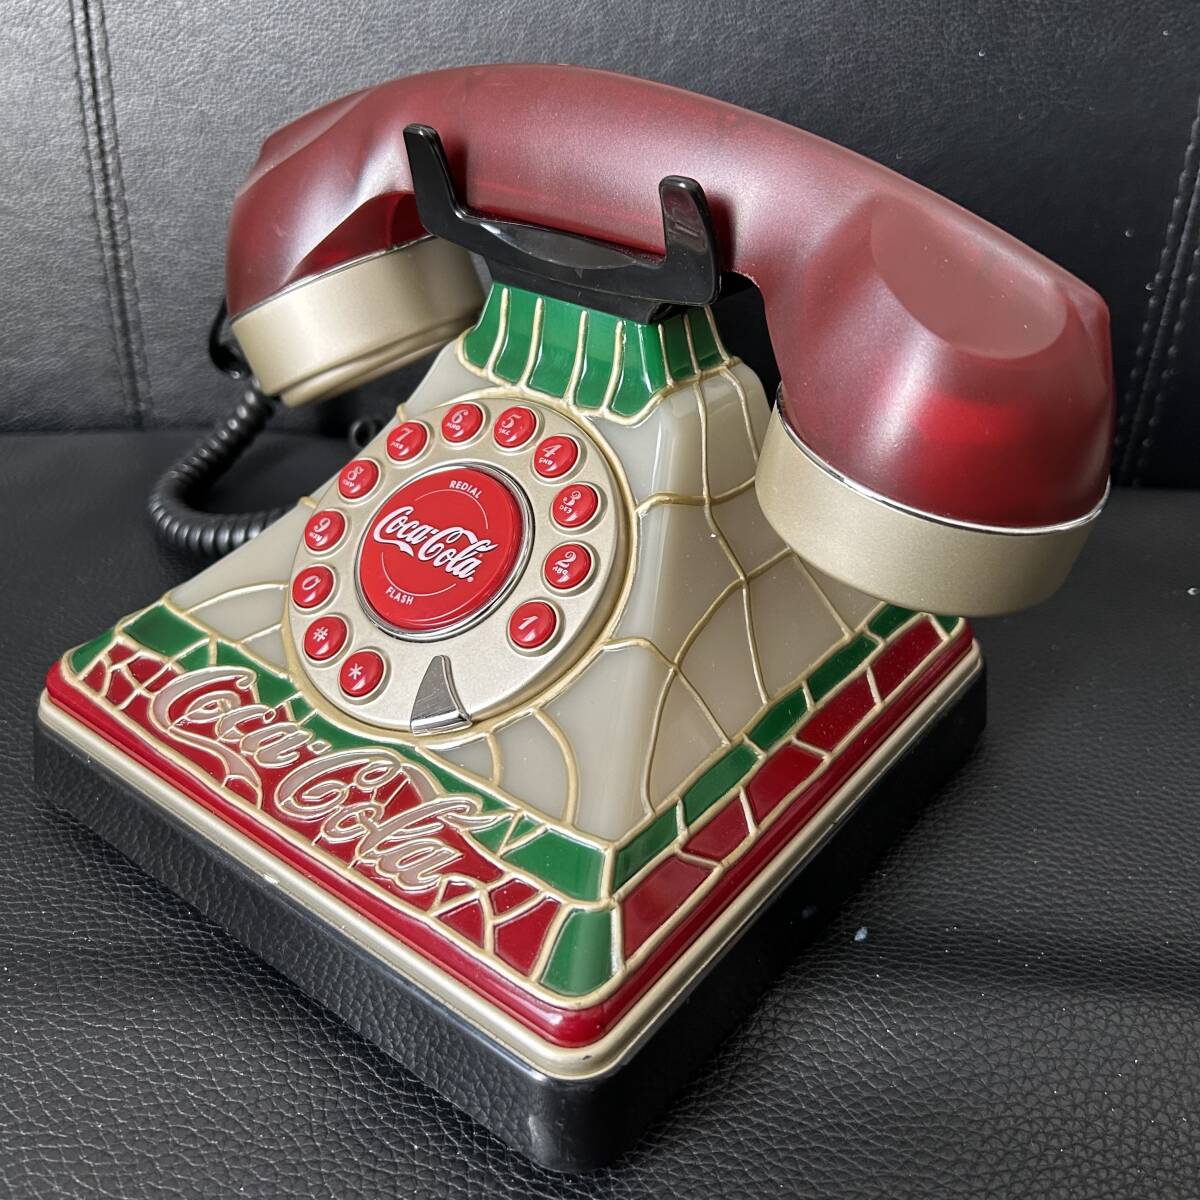  Vintage * Coca * Cola / Tiffany витражное стекло стиль / телефонный аппарат телефон *